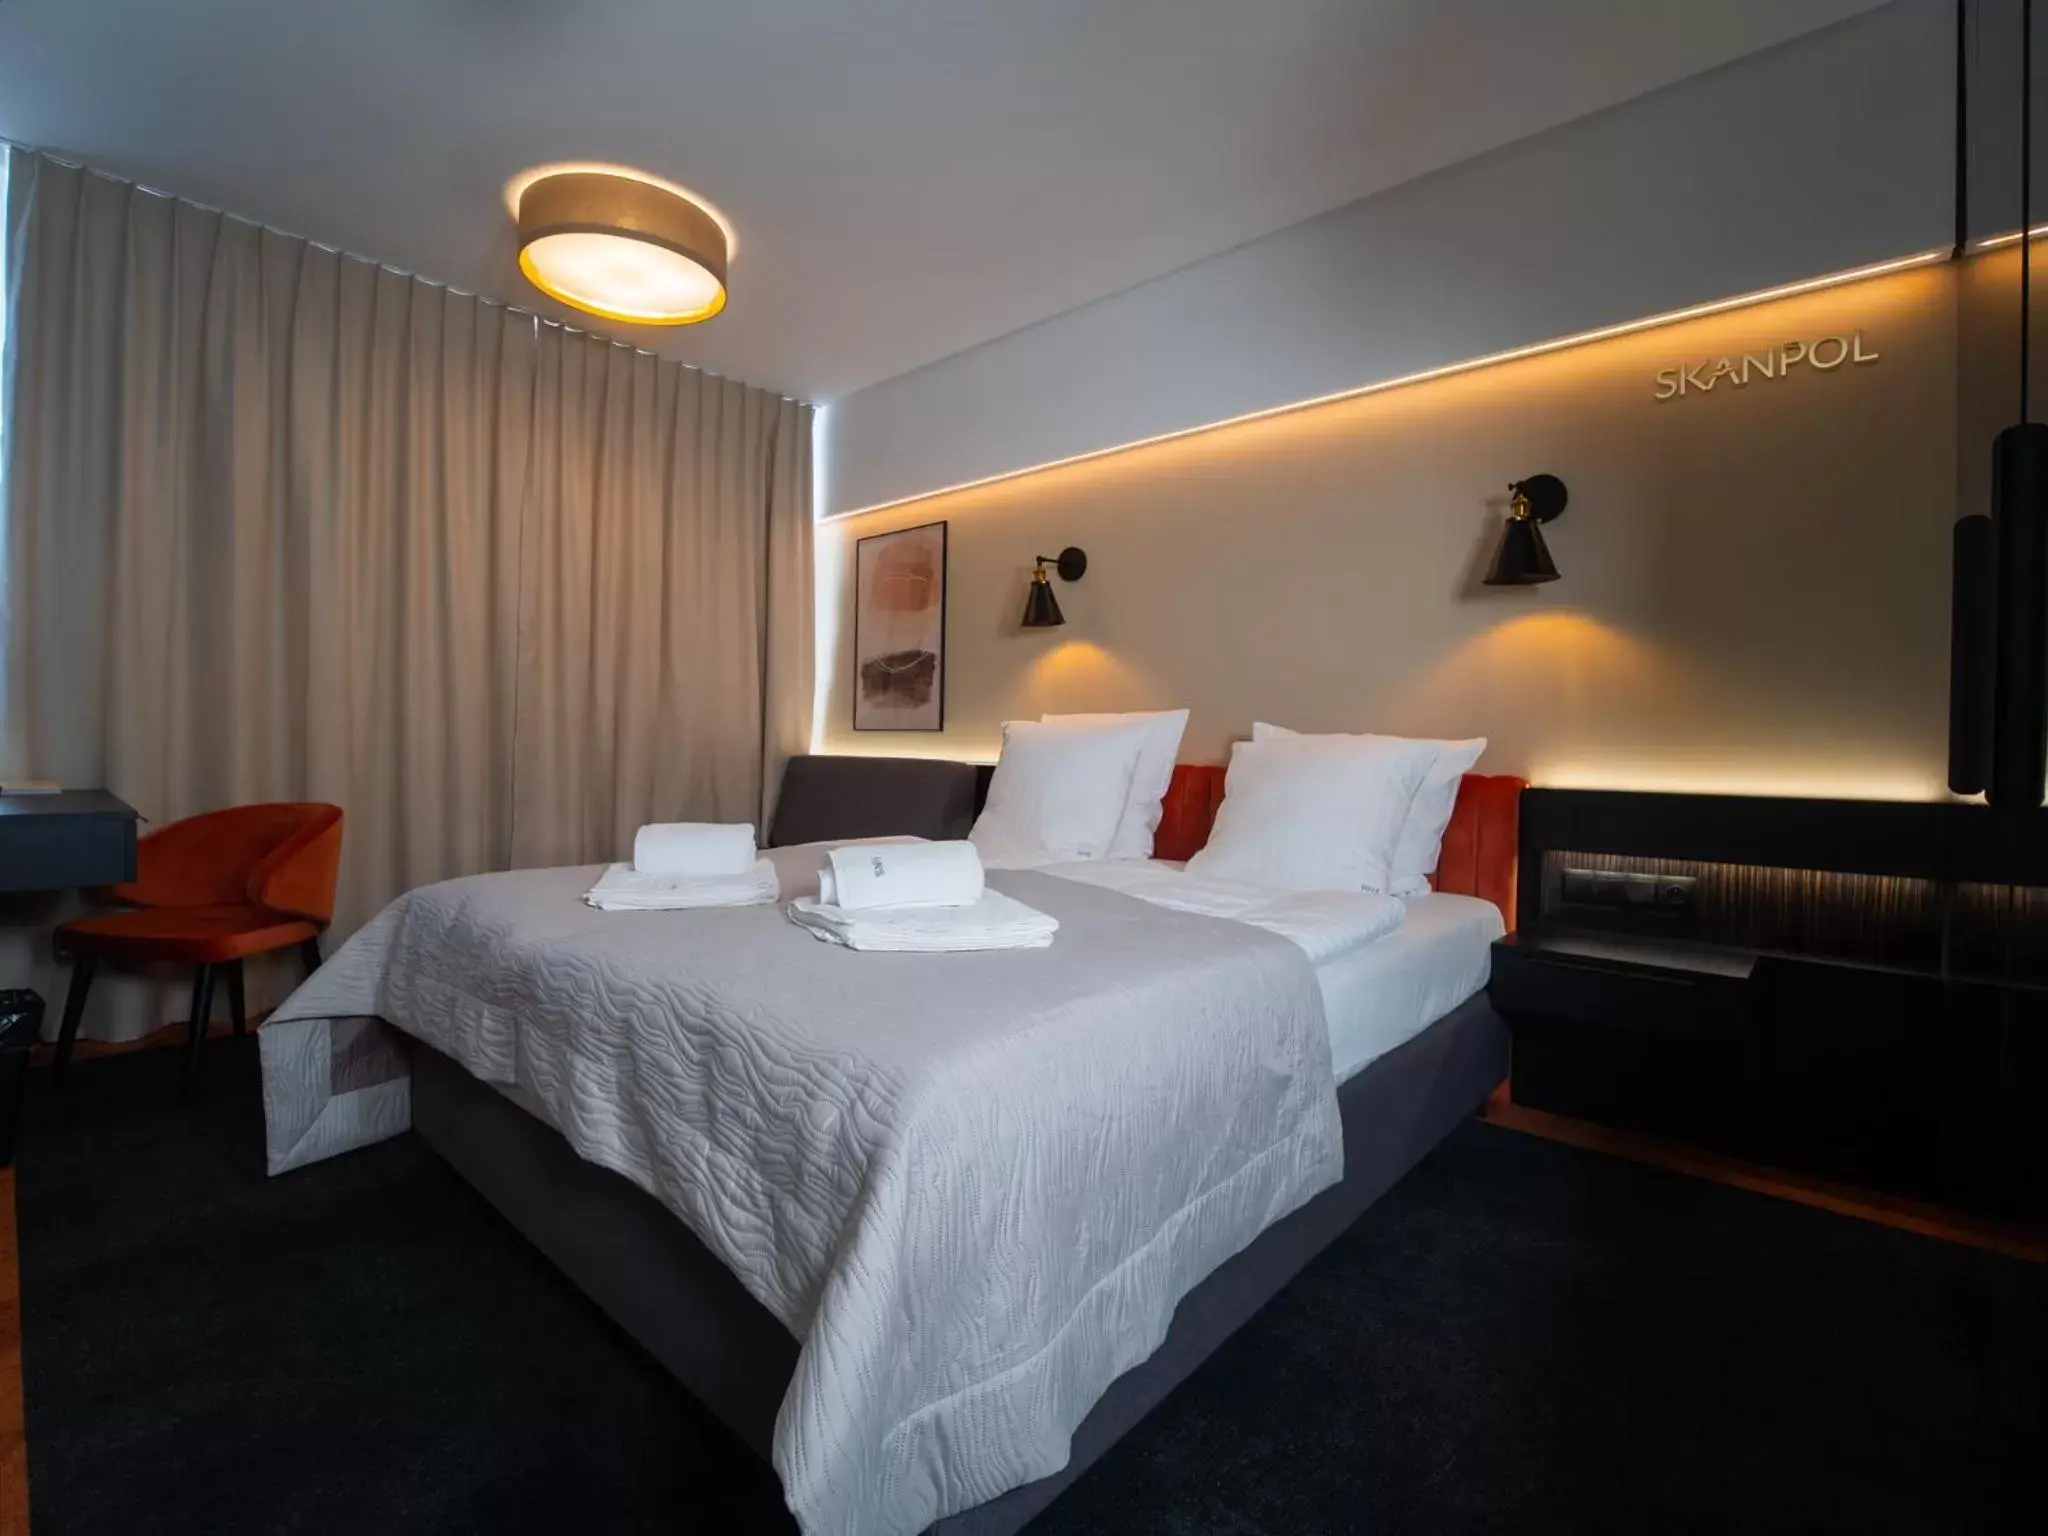 Bed in Hotel New Skanpol